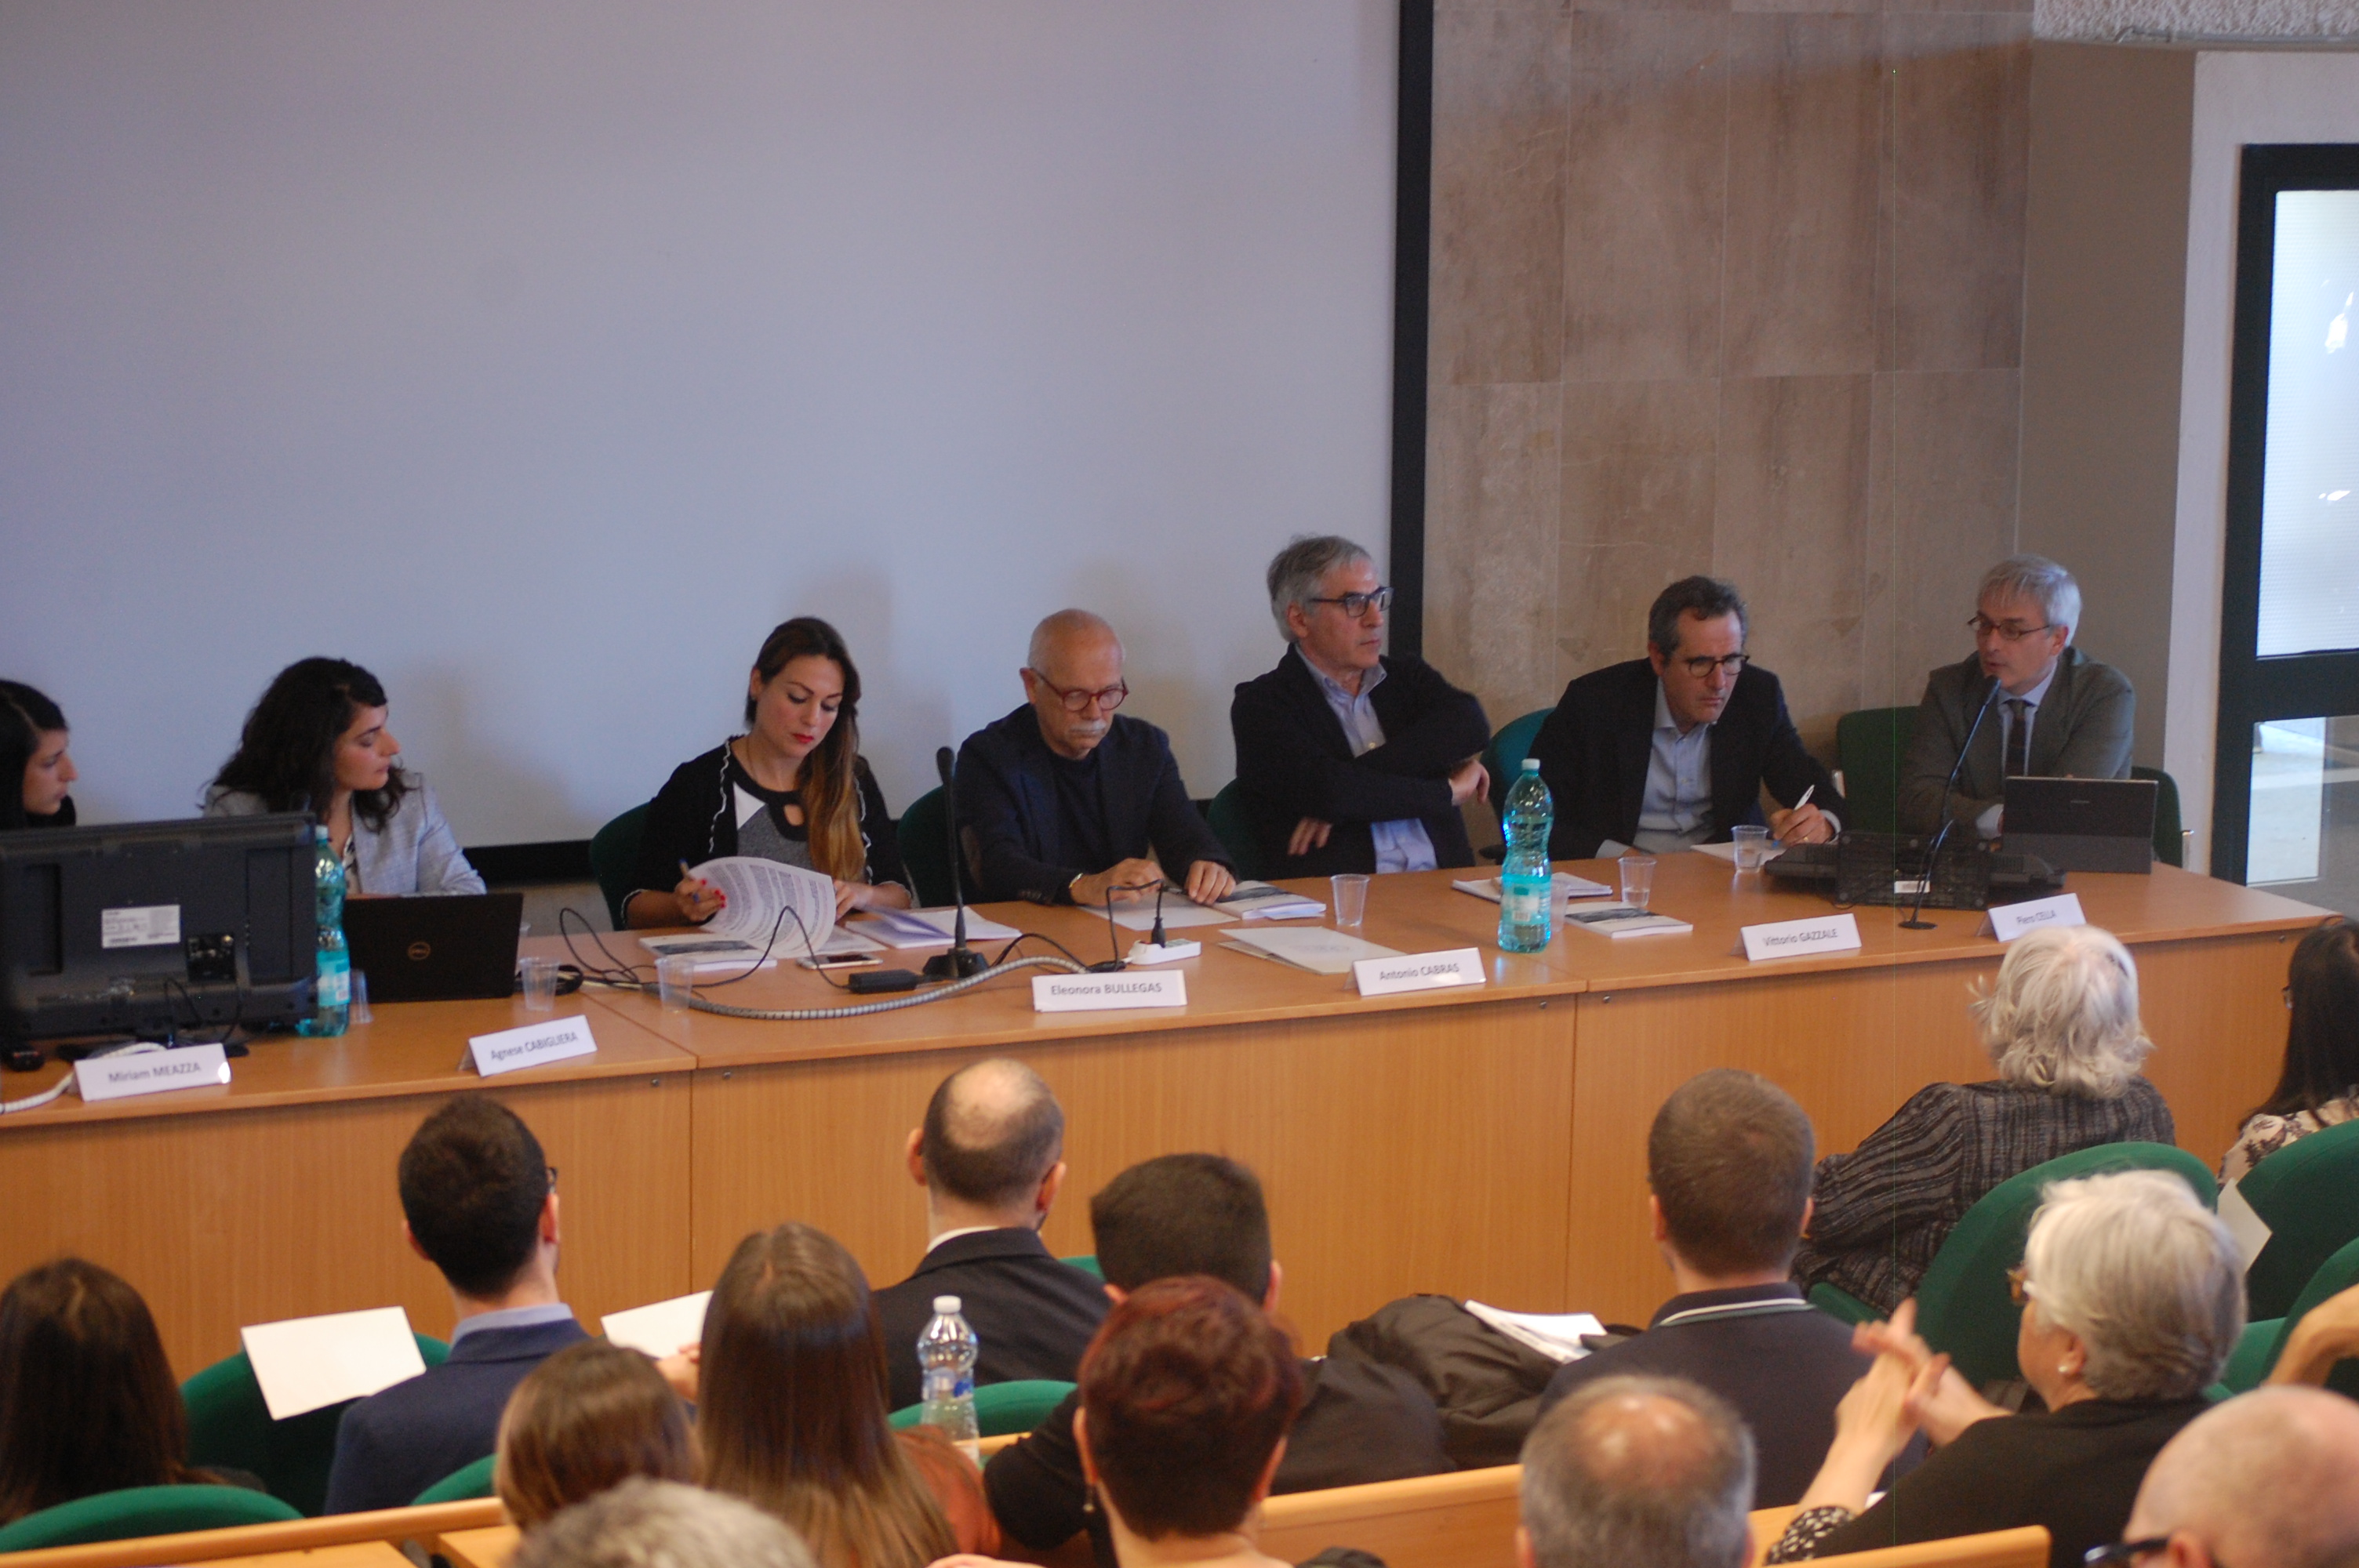 Rapporto CRENoS: l'avvio della tavola rotonda moderata da Eleonora Bullegas